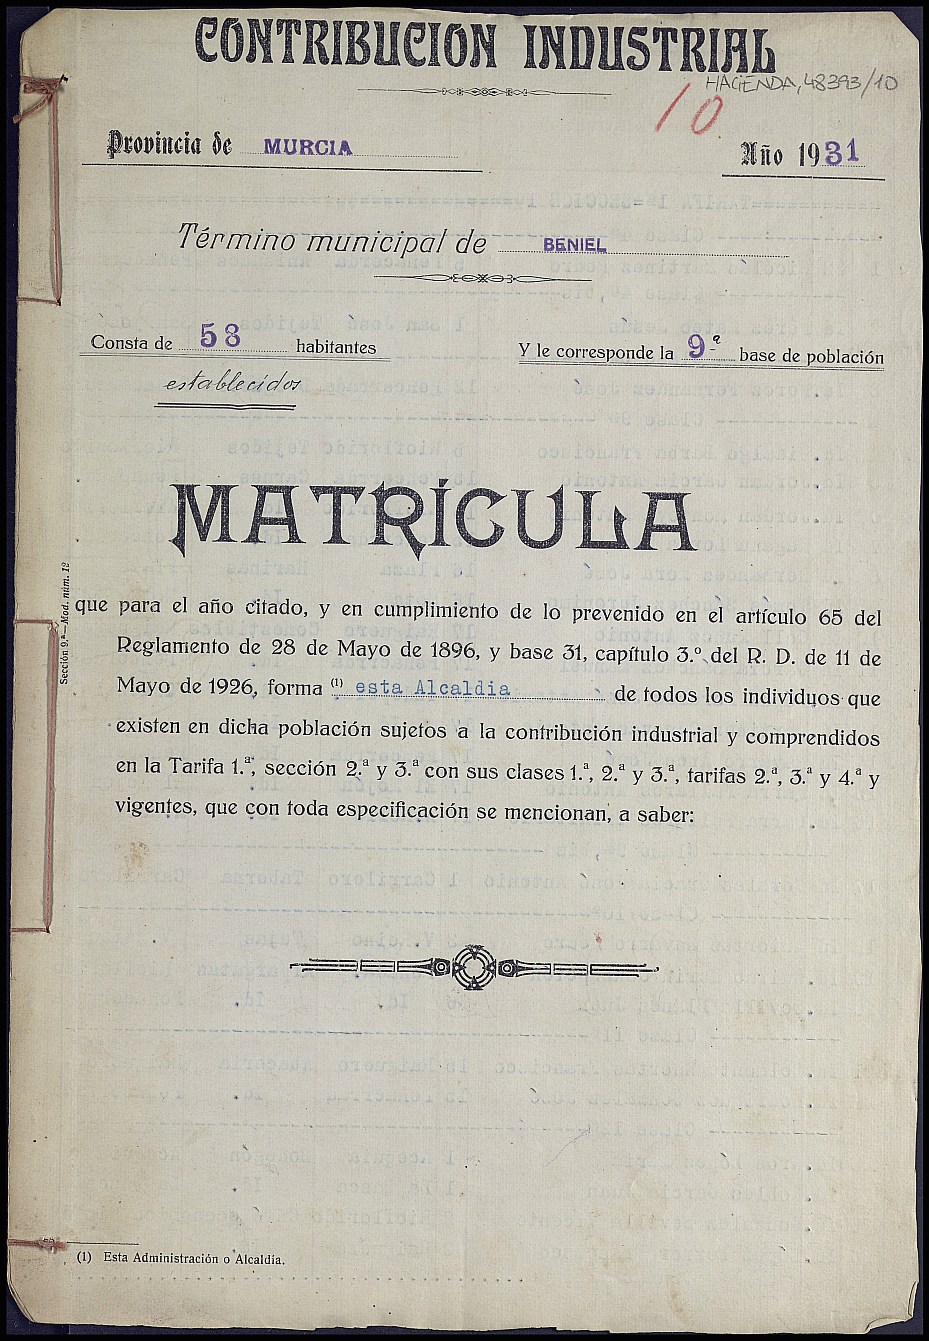 Matrícula de la contribución industrial de Beniel. Año 1931.